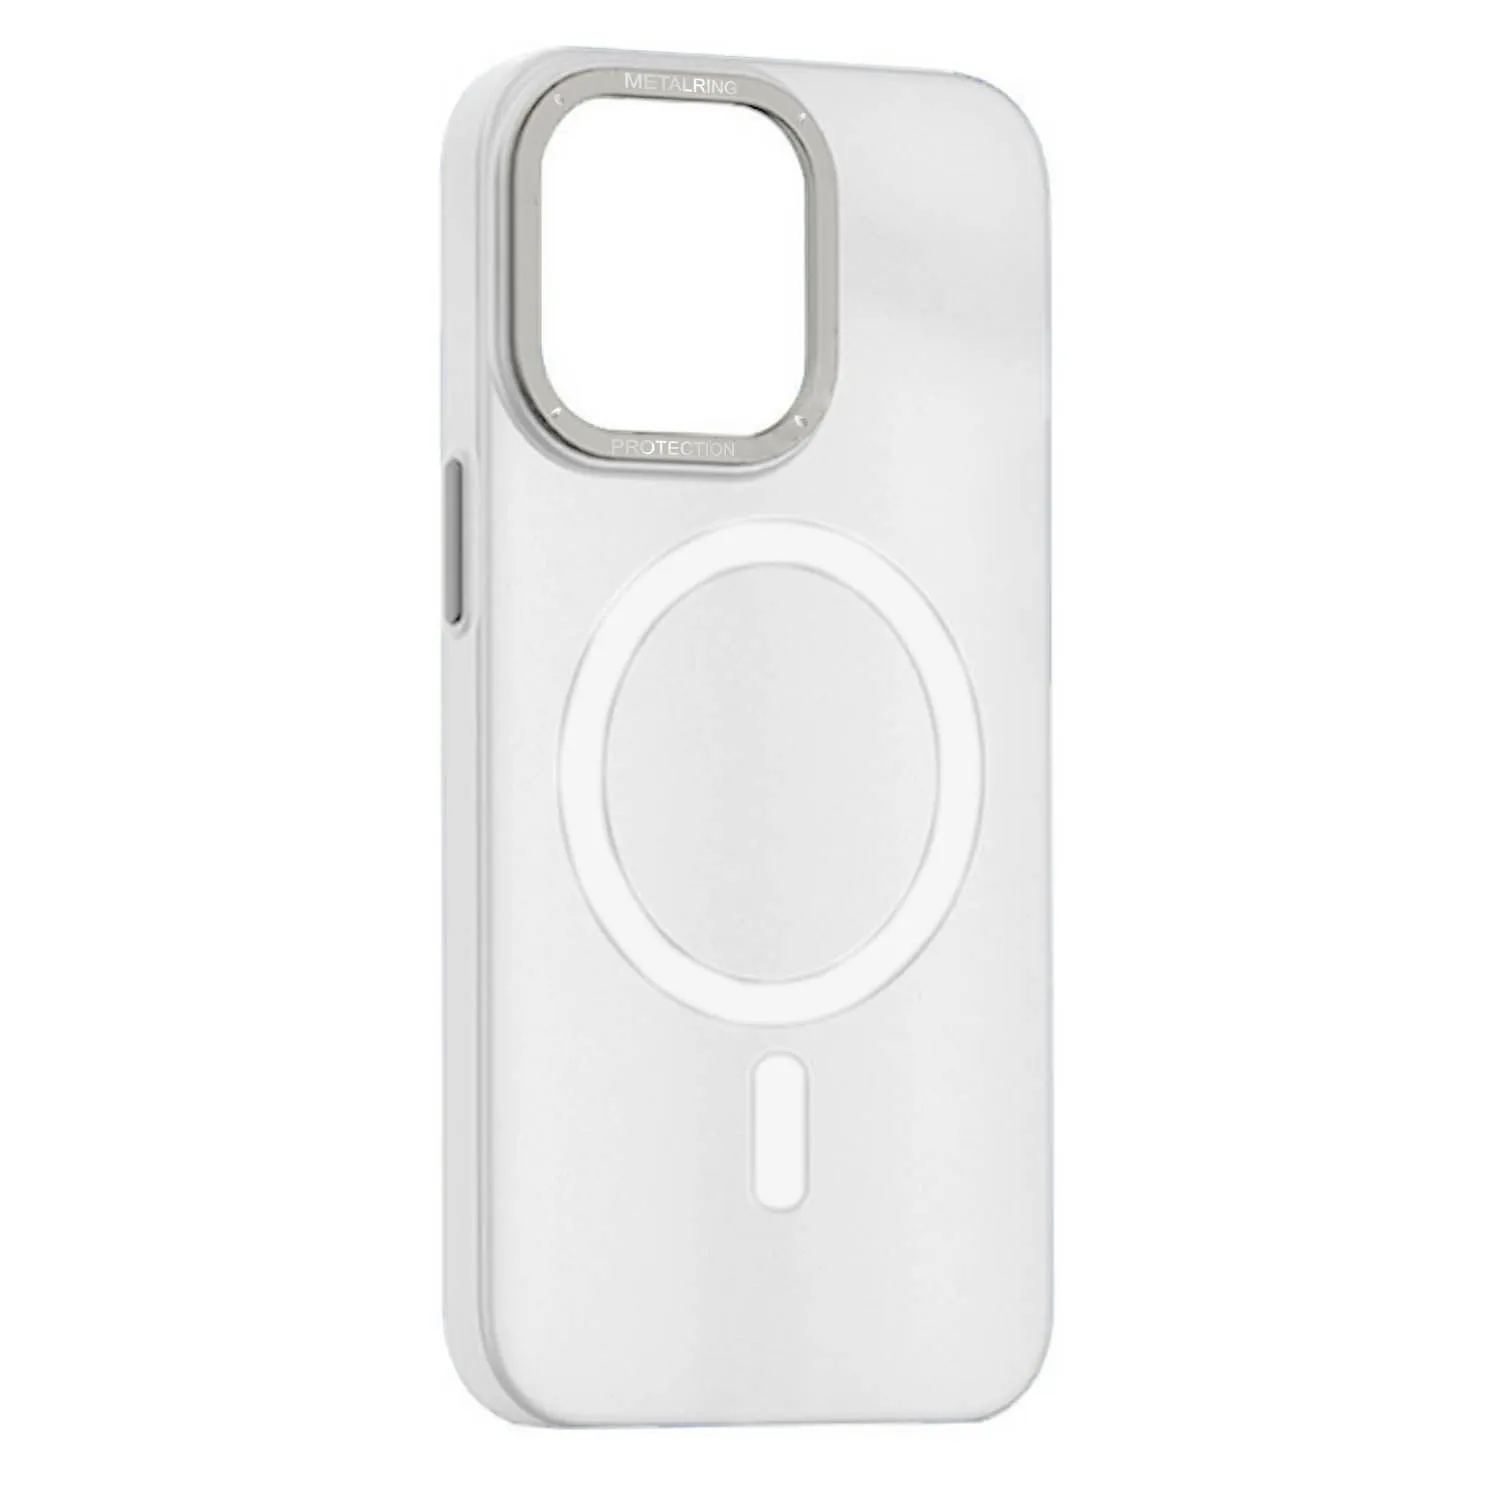 Матовый чехол Apple iPhone 12 Pro Max с металлической окантовкой с MagSafe (белый)